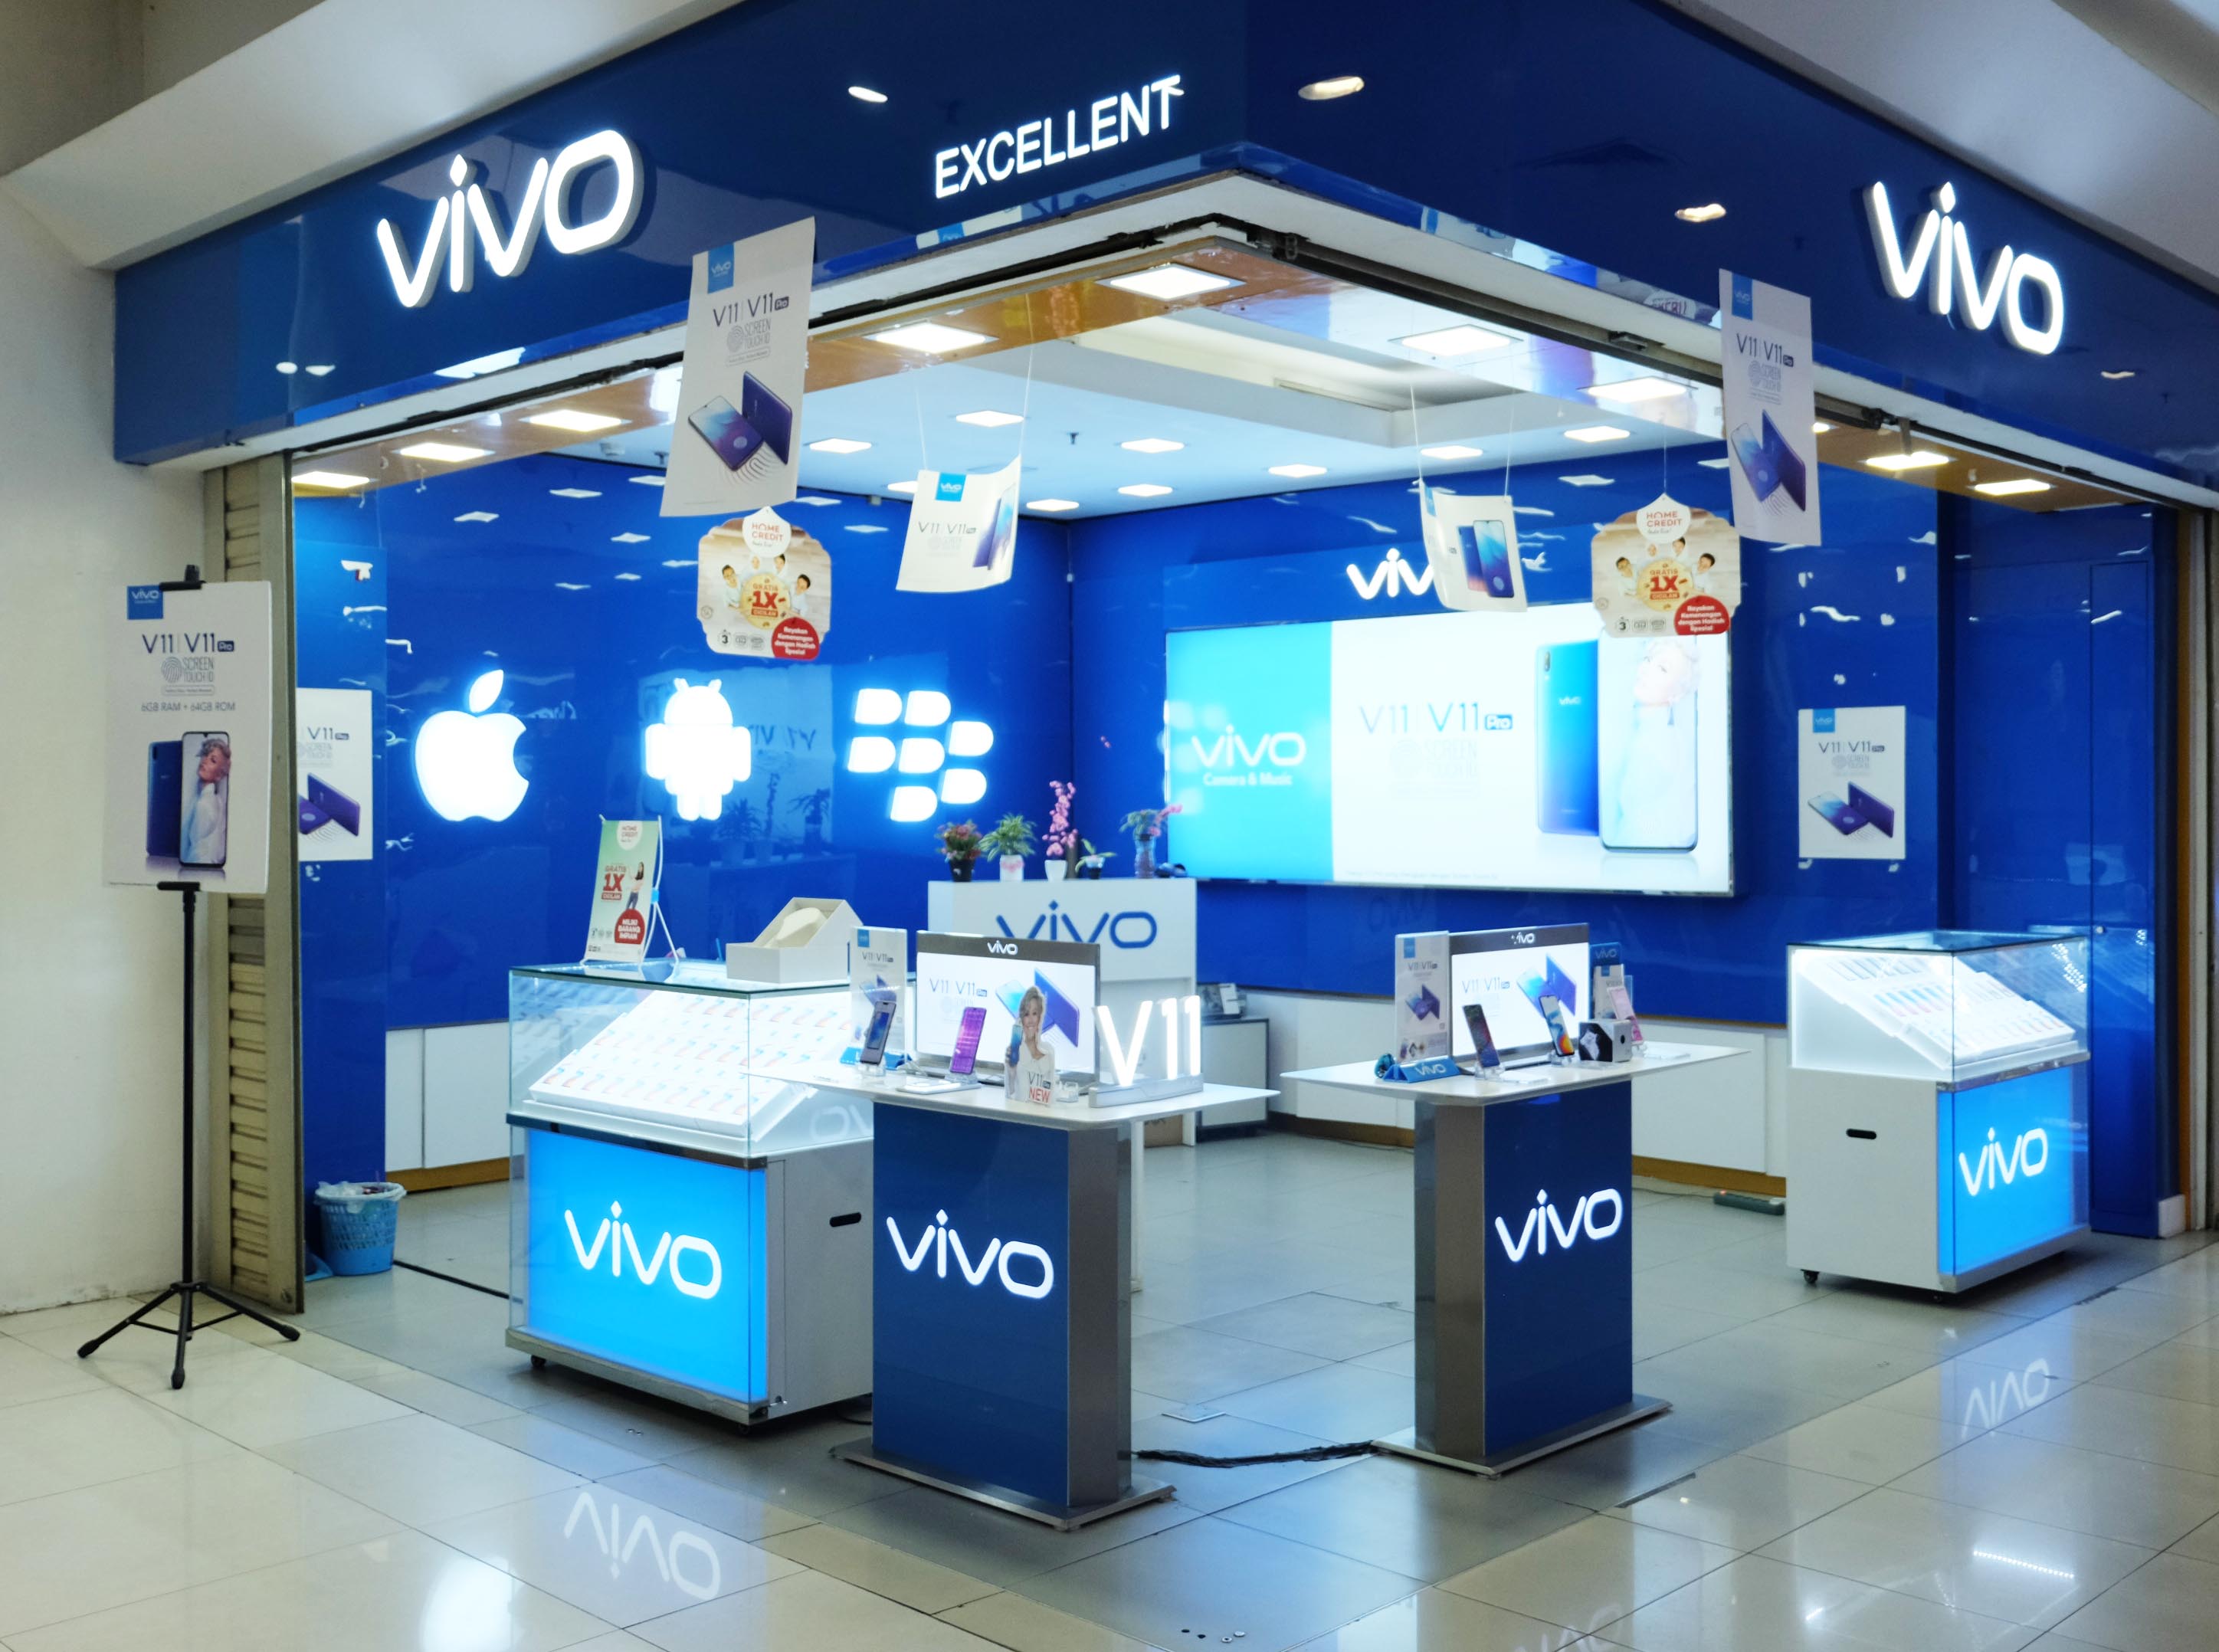 Vivo'nun yeni telefonu görselleri ve teknik özellikleri ile karşımızda